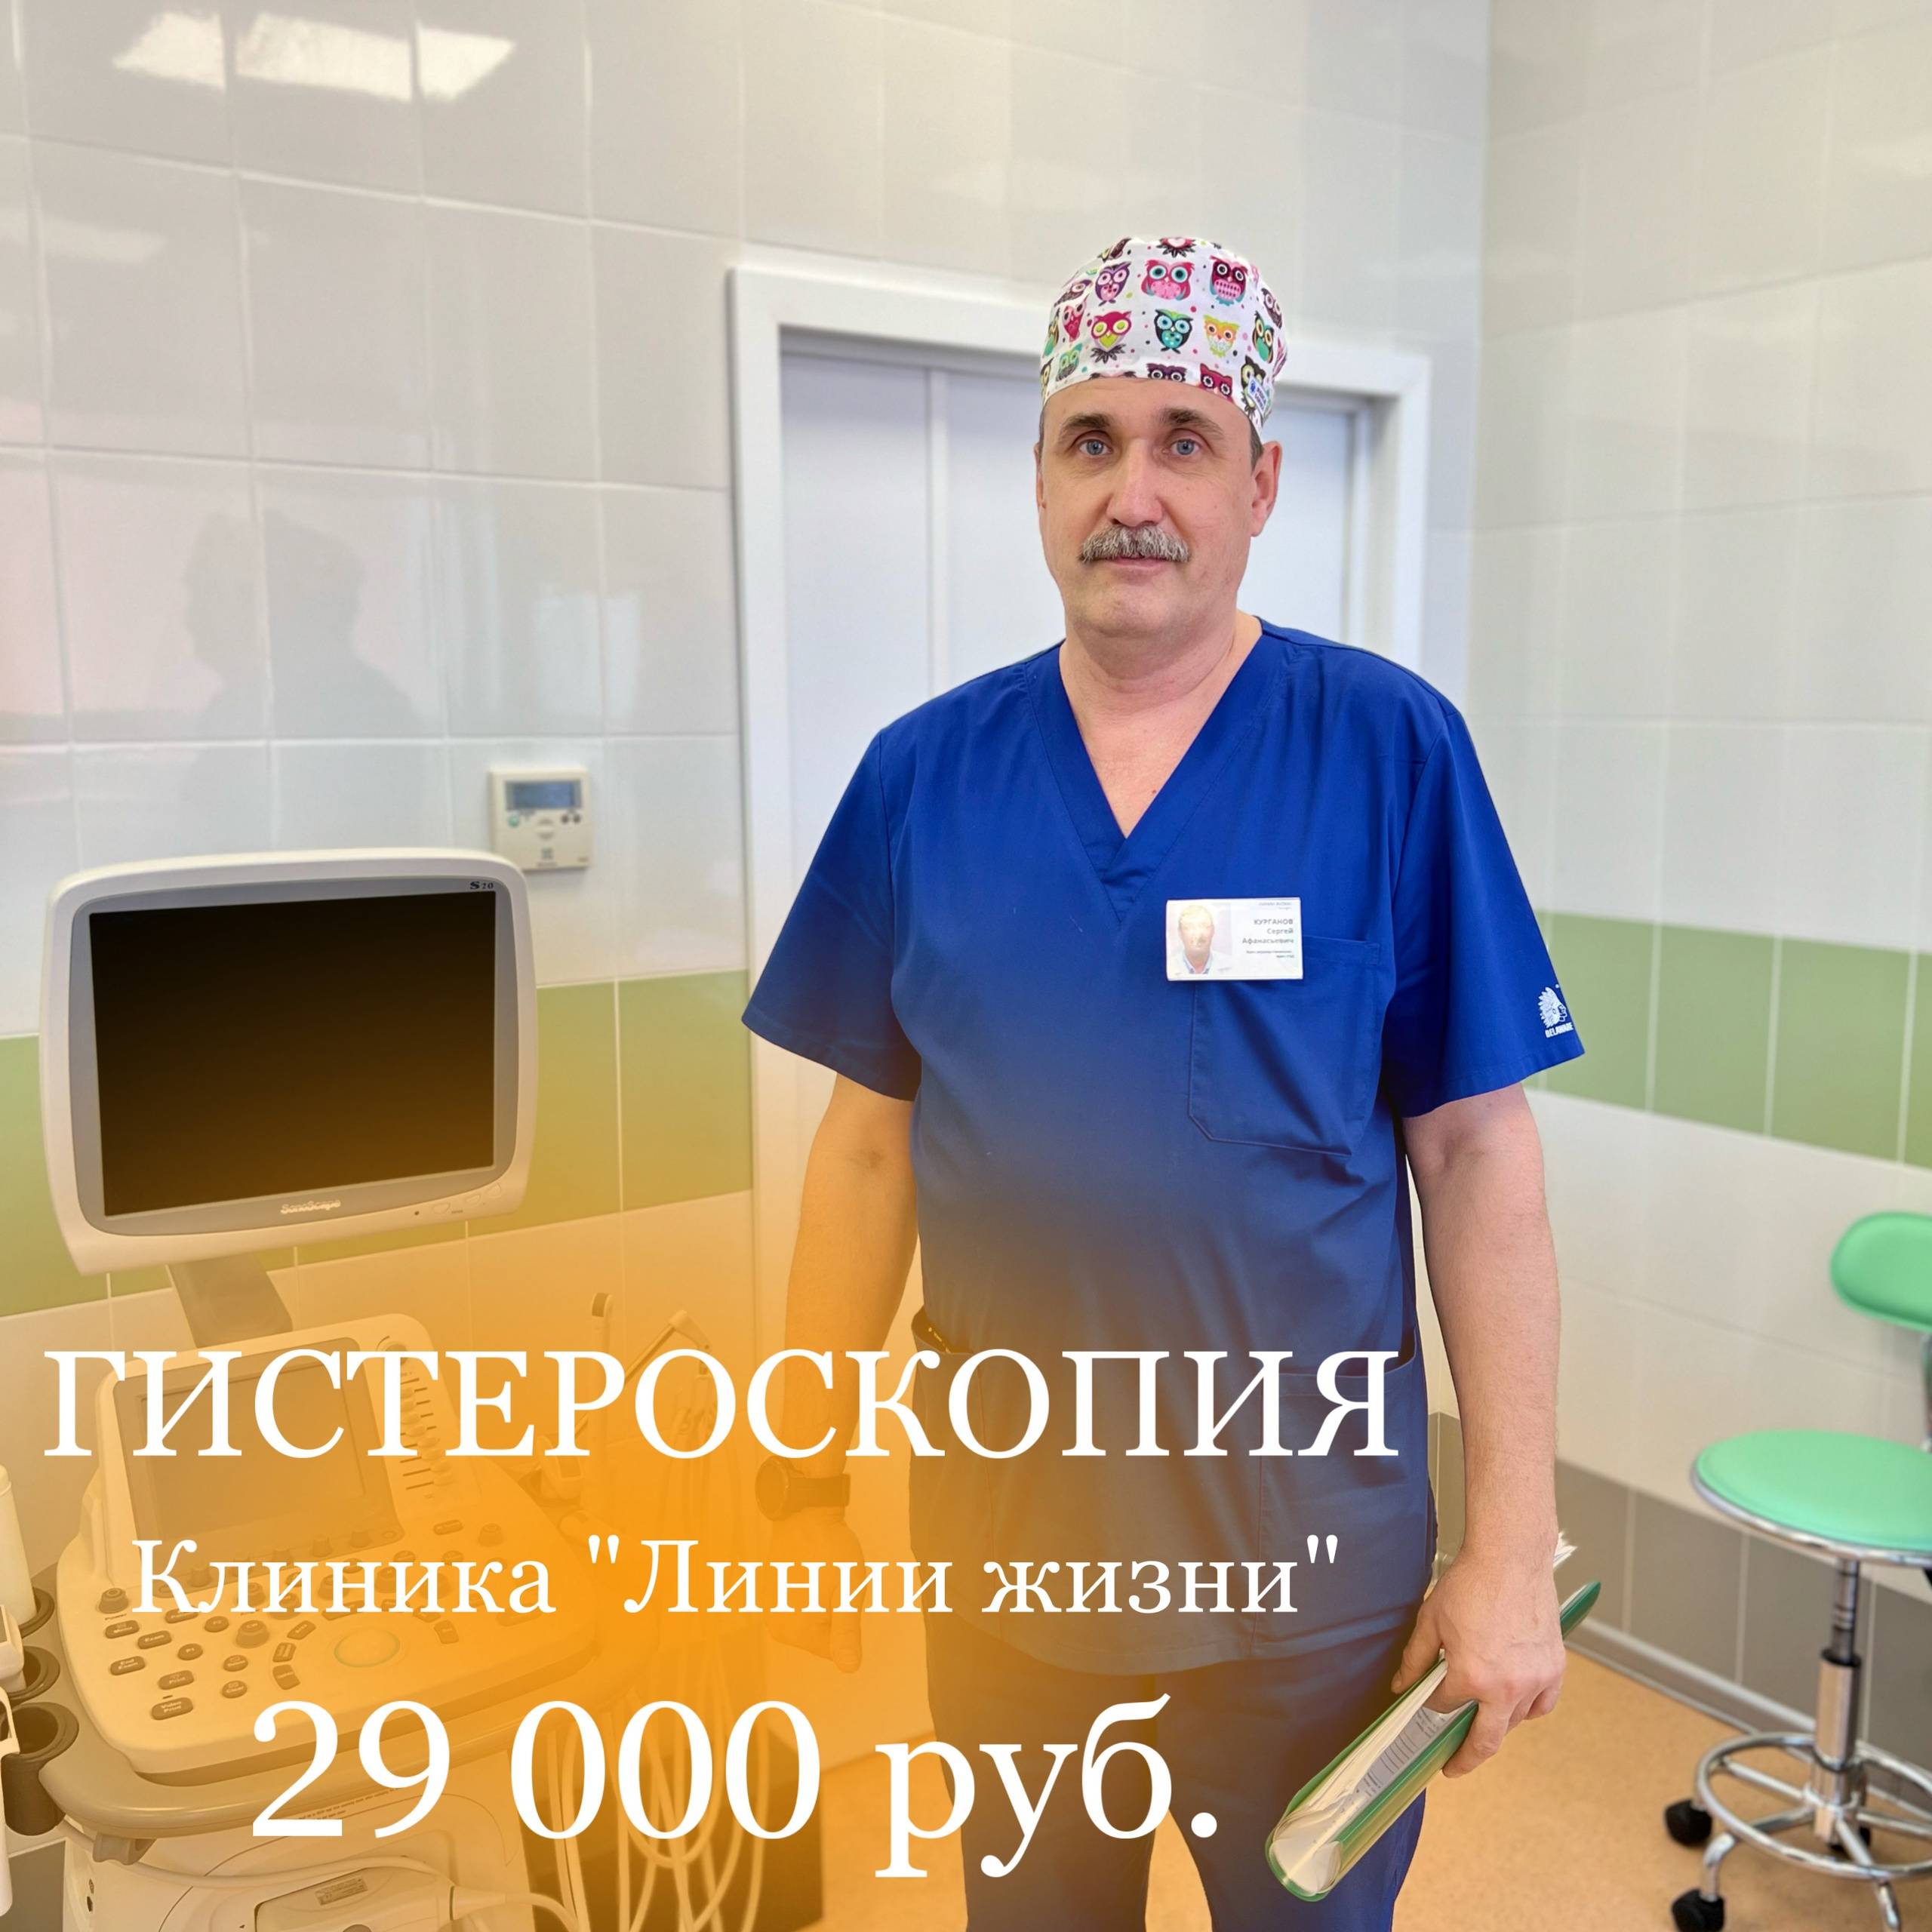 Сергей Афанасьевич ежегодно выполняет колоссальное количество операций